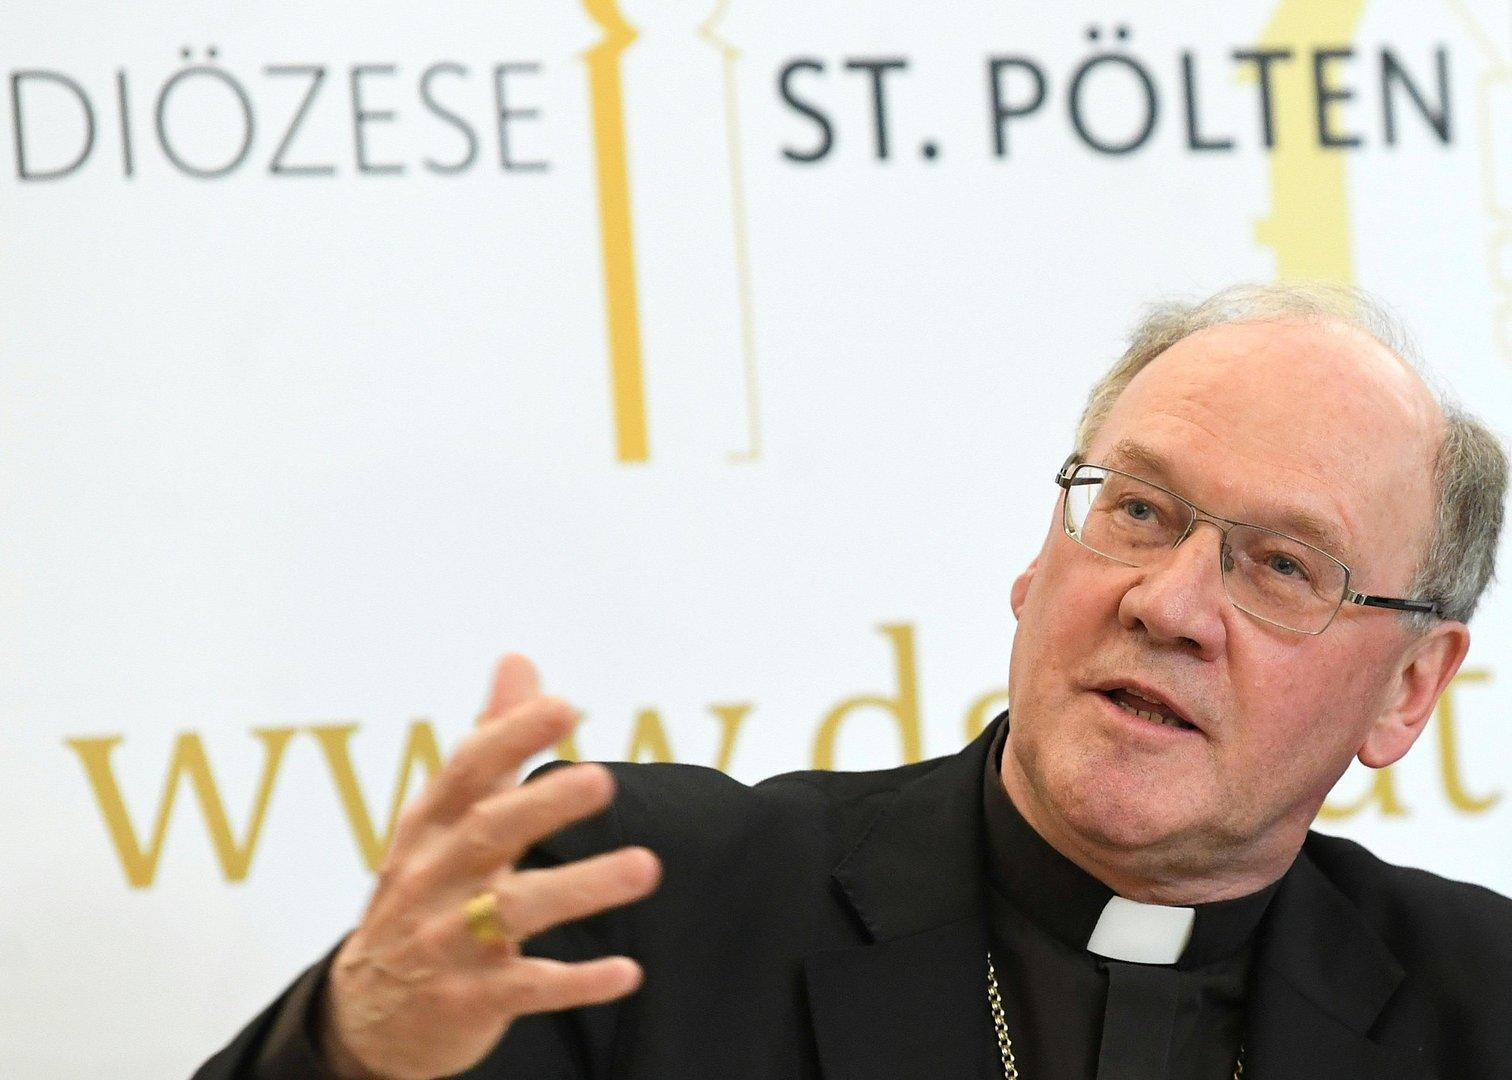 Diözese Gurk: Das sagt Bischof Schwarz zu den Vorwürfen